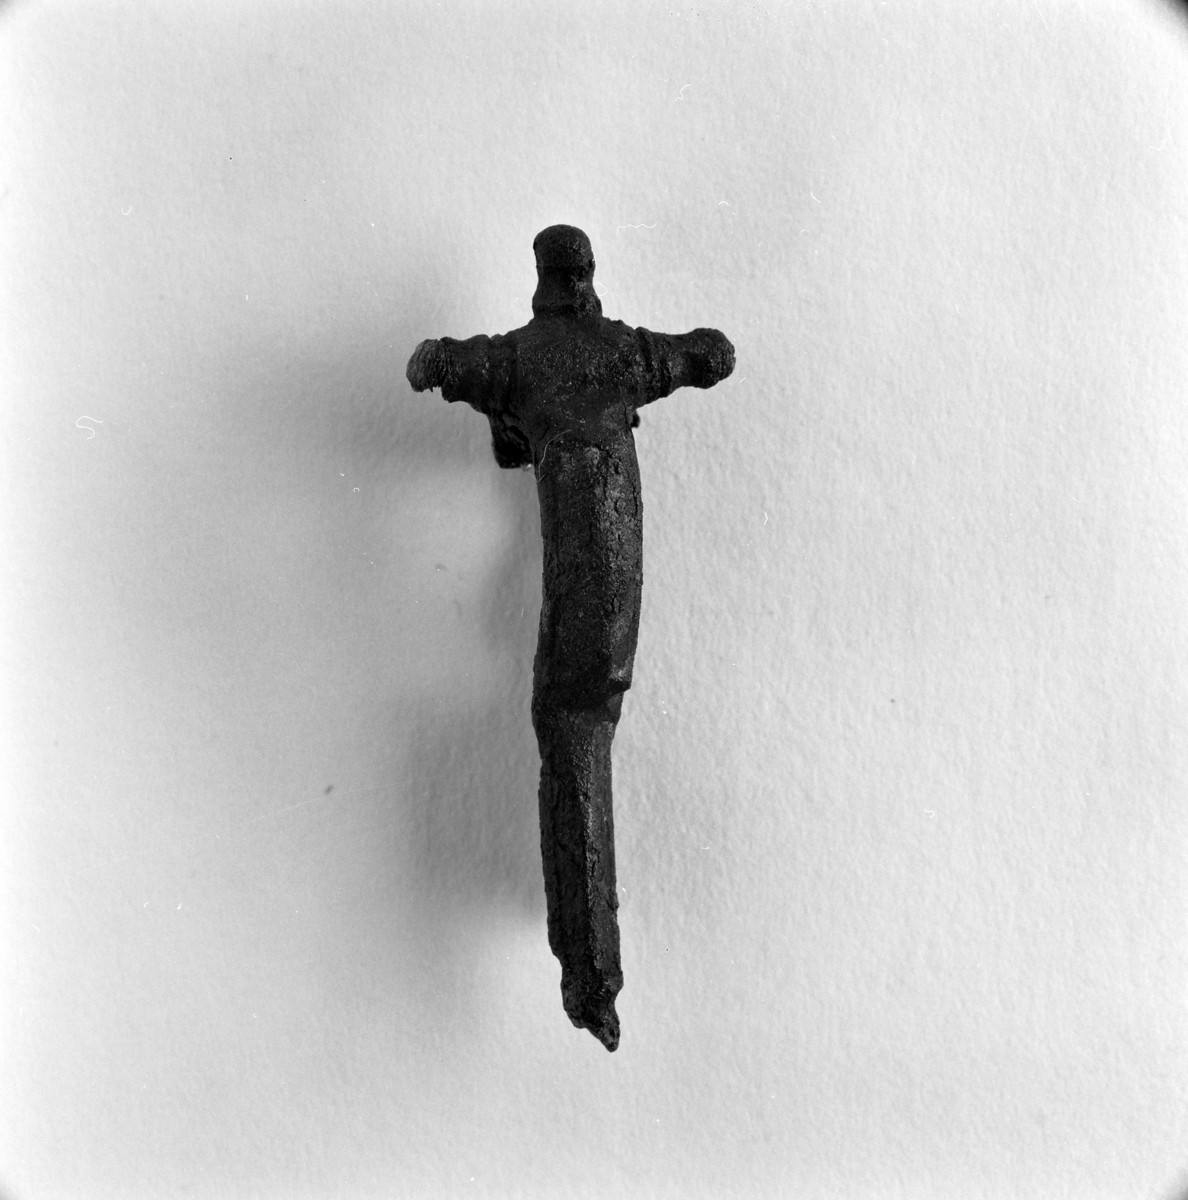 Ett dräktspänne, så kallad fibula som hittades vid en arkeologisk undersökning av ett gravfält i Byarum i Vaggeryds kommun. Fyndnummer JM.55938:96. Beskrivs som en korsformad bronsfibula med en nål av järn.